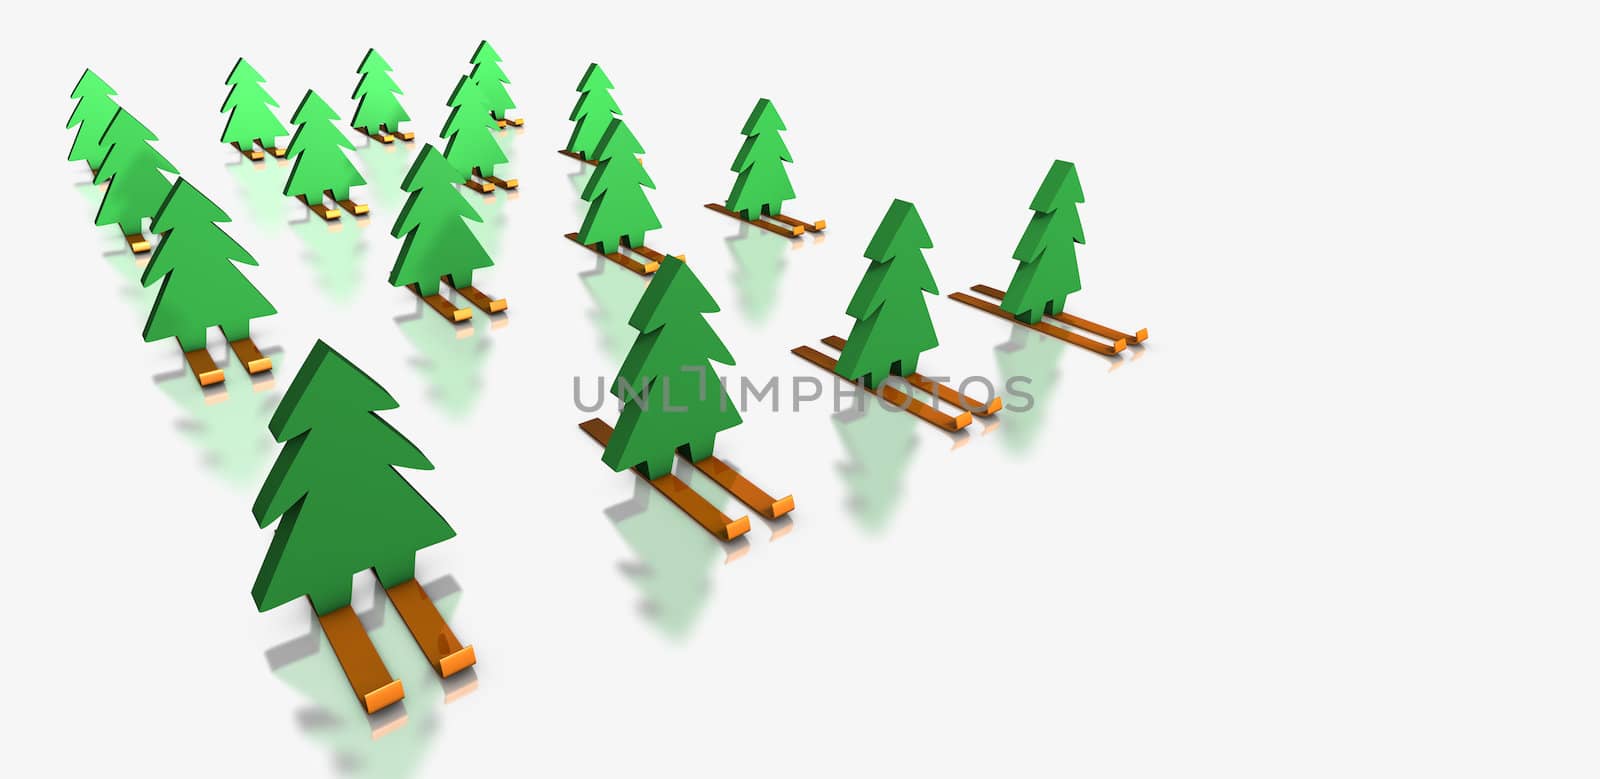 Green Christmas trees skiing